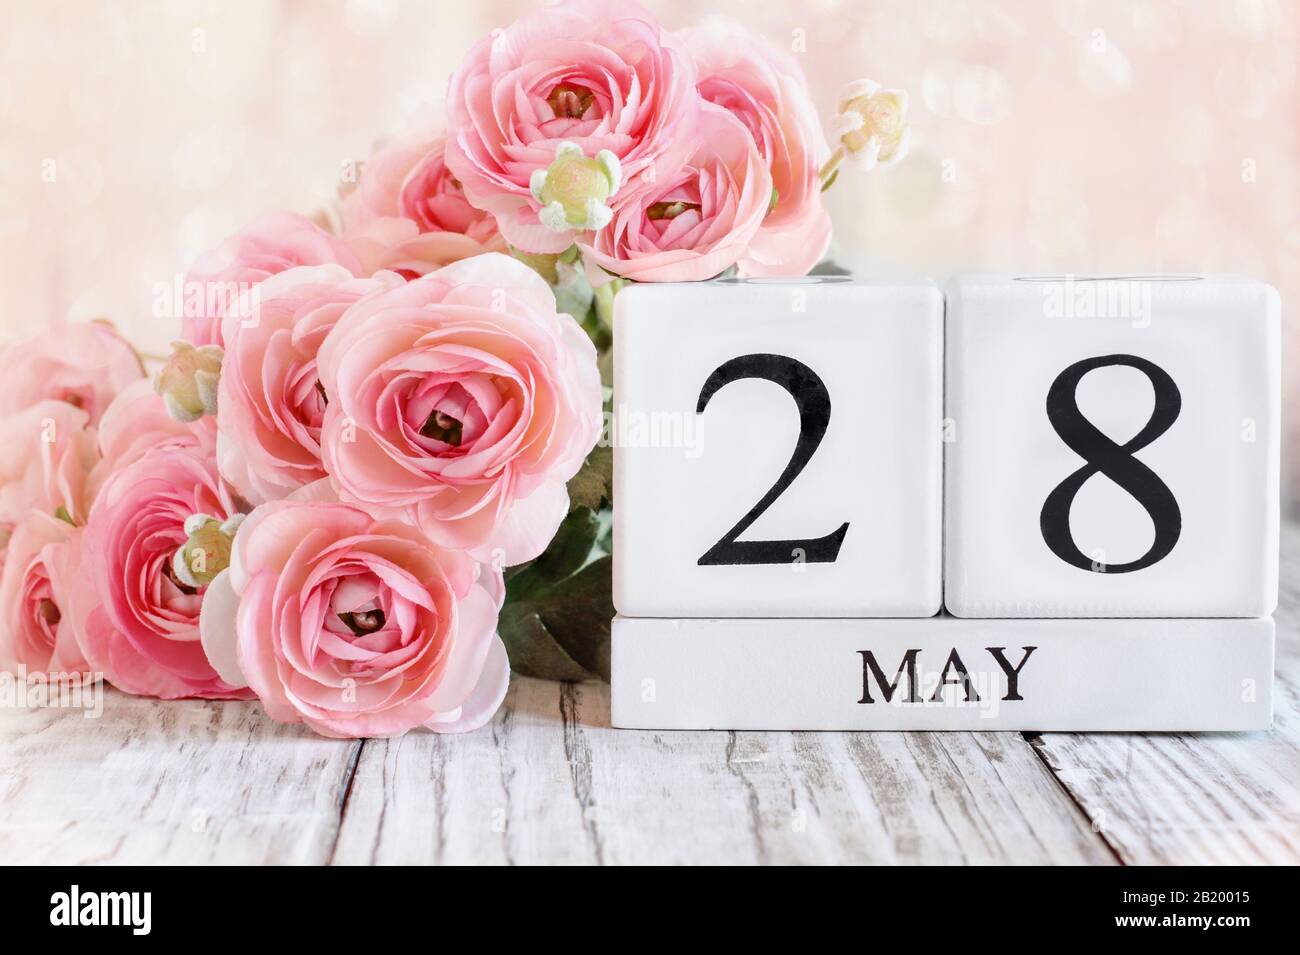 Blocs calendrier en bois blanc avec la date 28 mai et fleurs roses de ranunculus sur une table en bois pour le jour commémoratif national. Mise au point sélective avec flou Banque D'Images